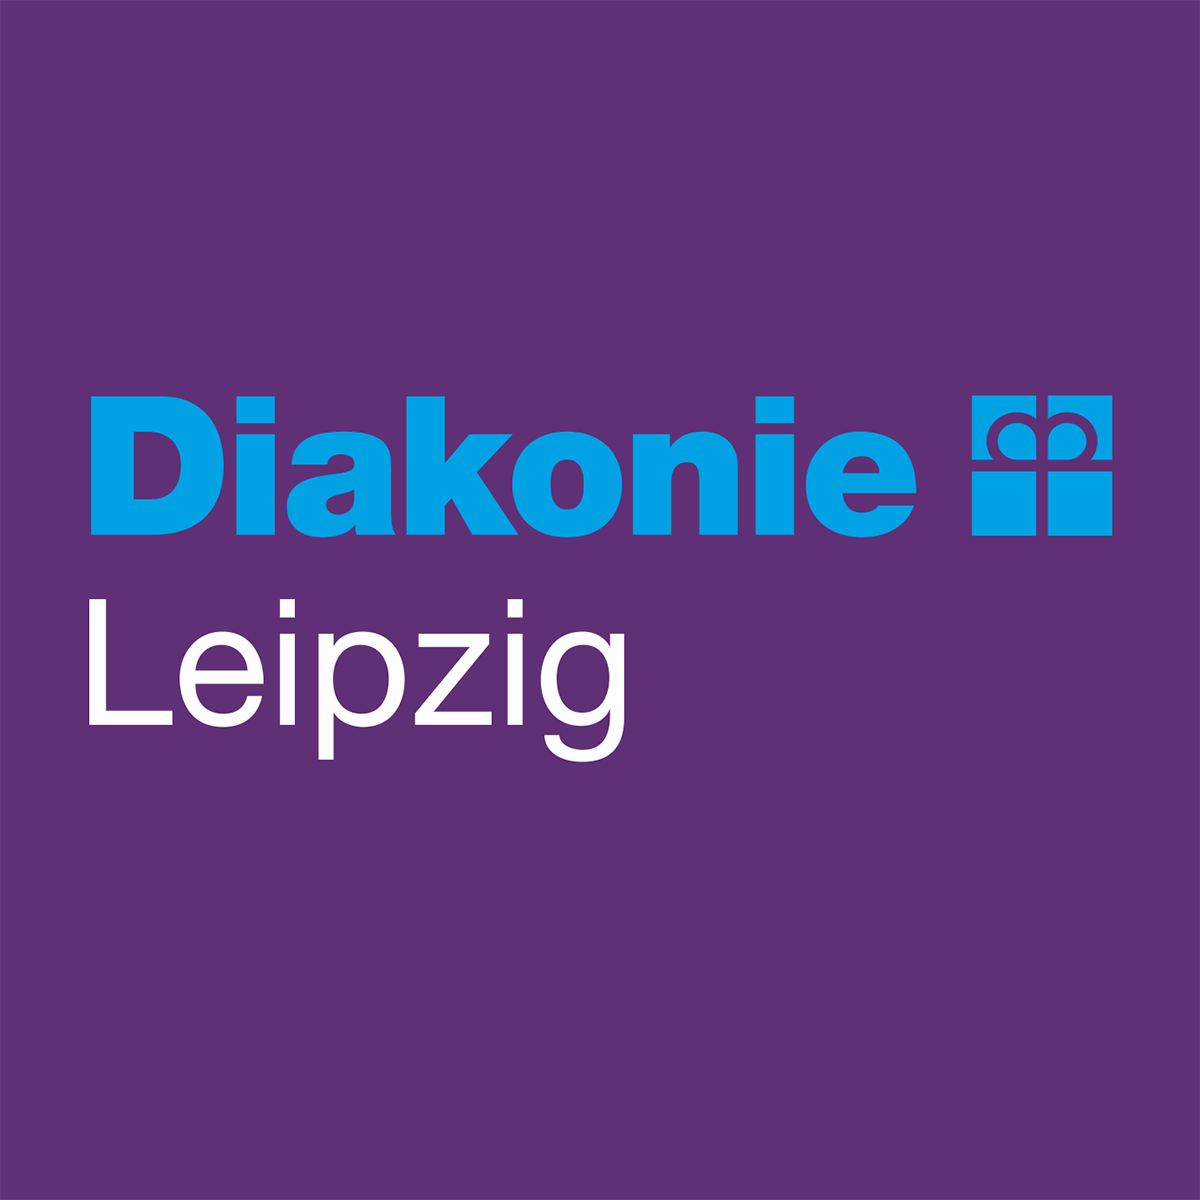 Diakonie Leipzig - hier lebt Soziale Arbeit in großer Vielfalt!